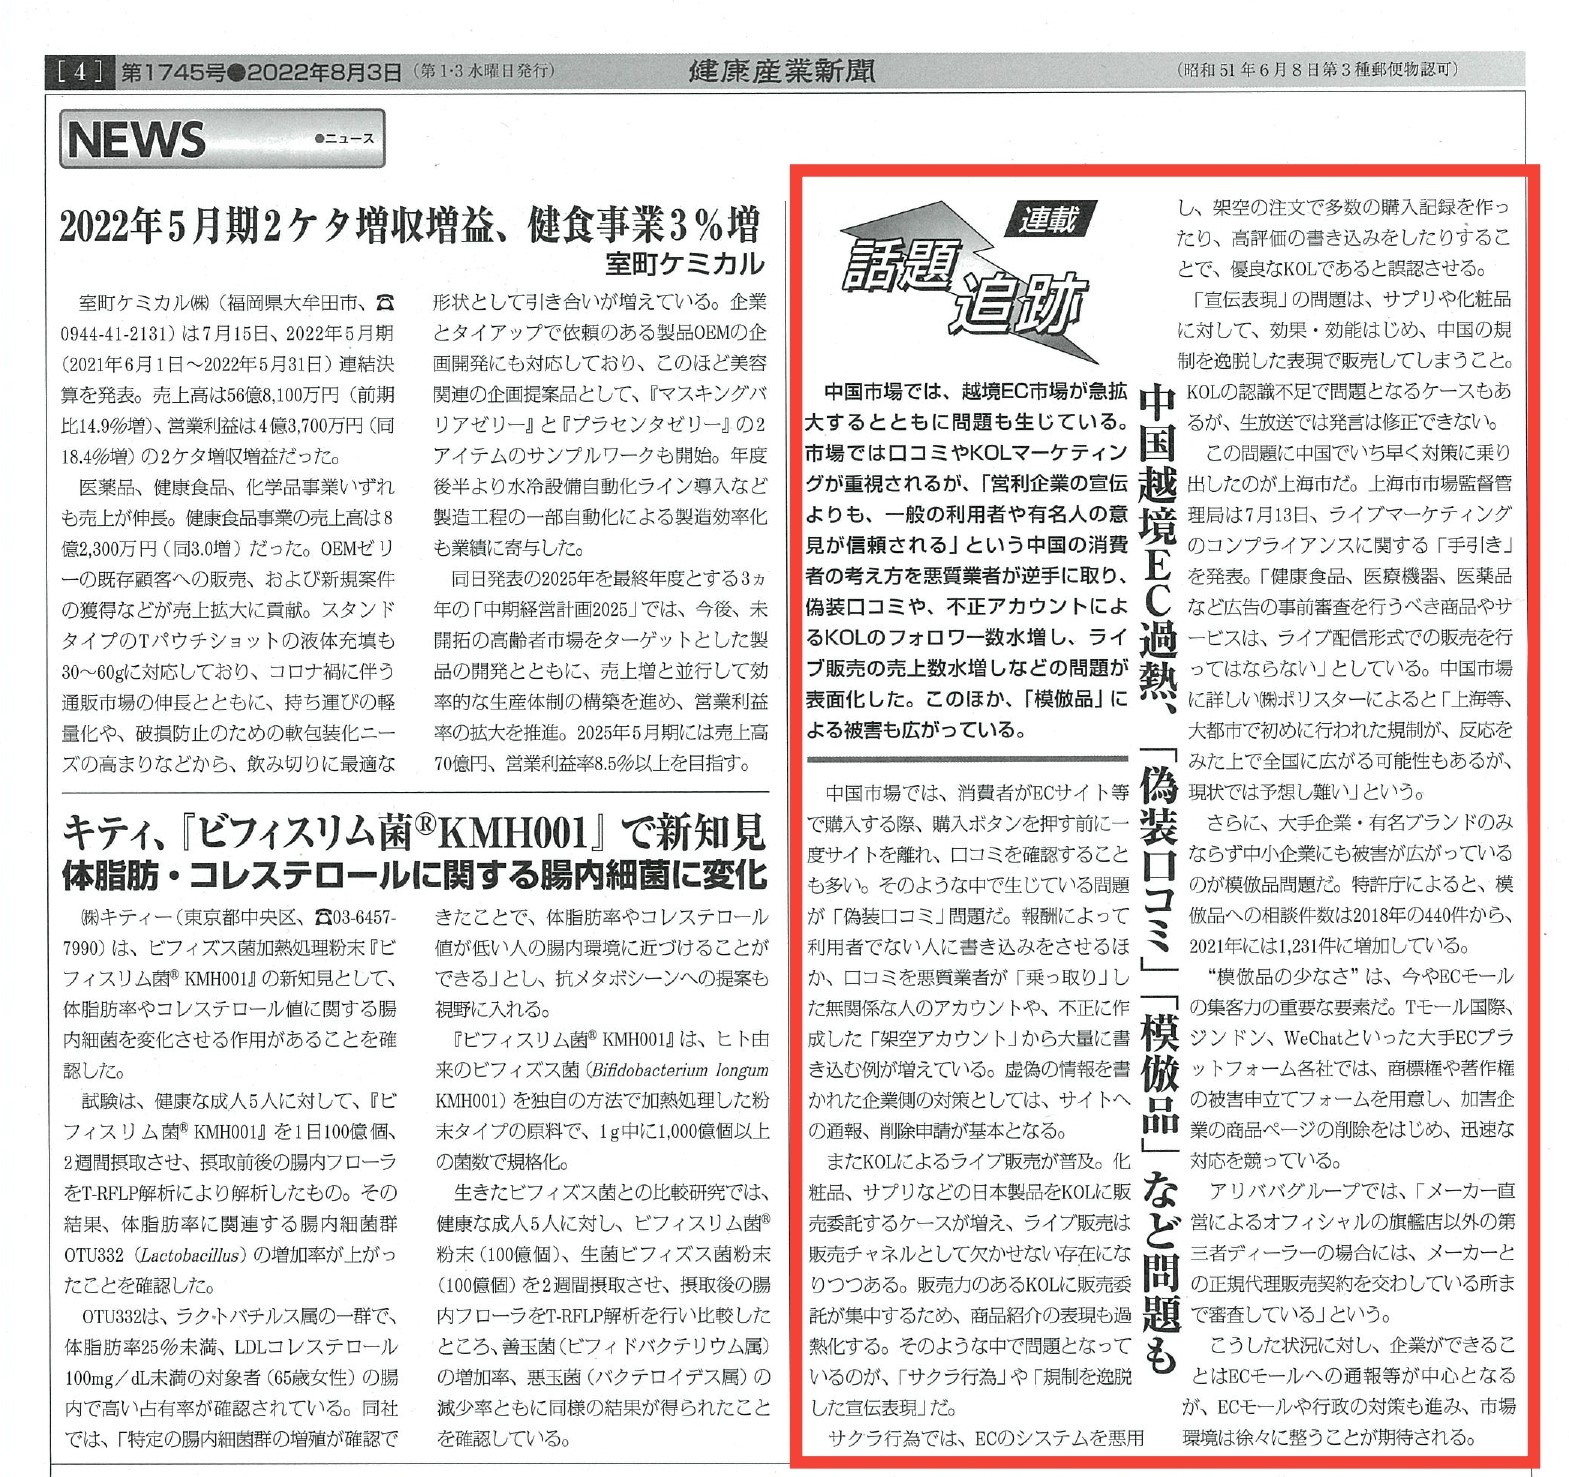 健康産業新聞へ中国市場における規制について情報提供を行いました